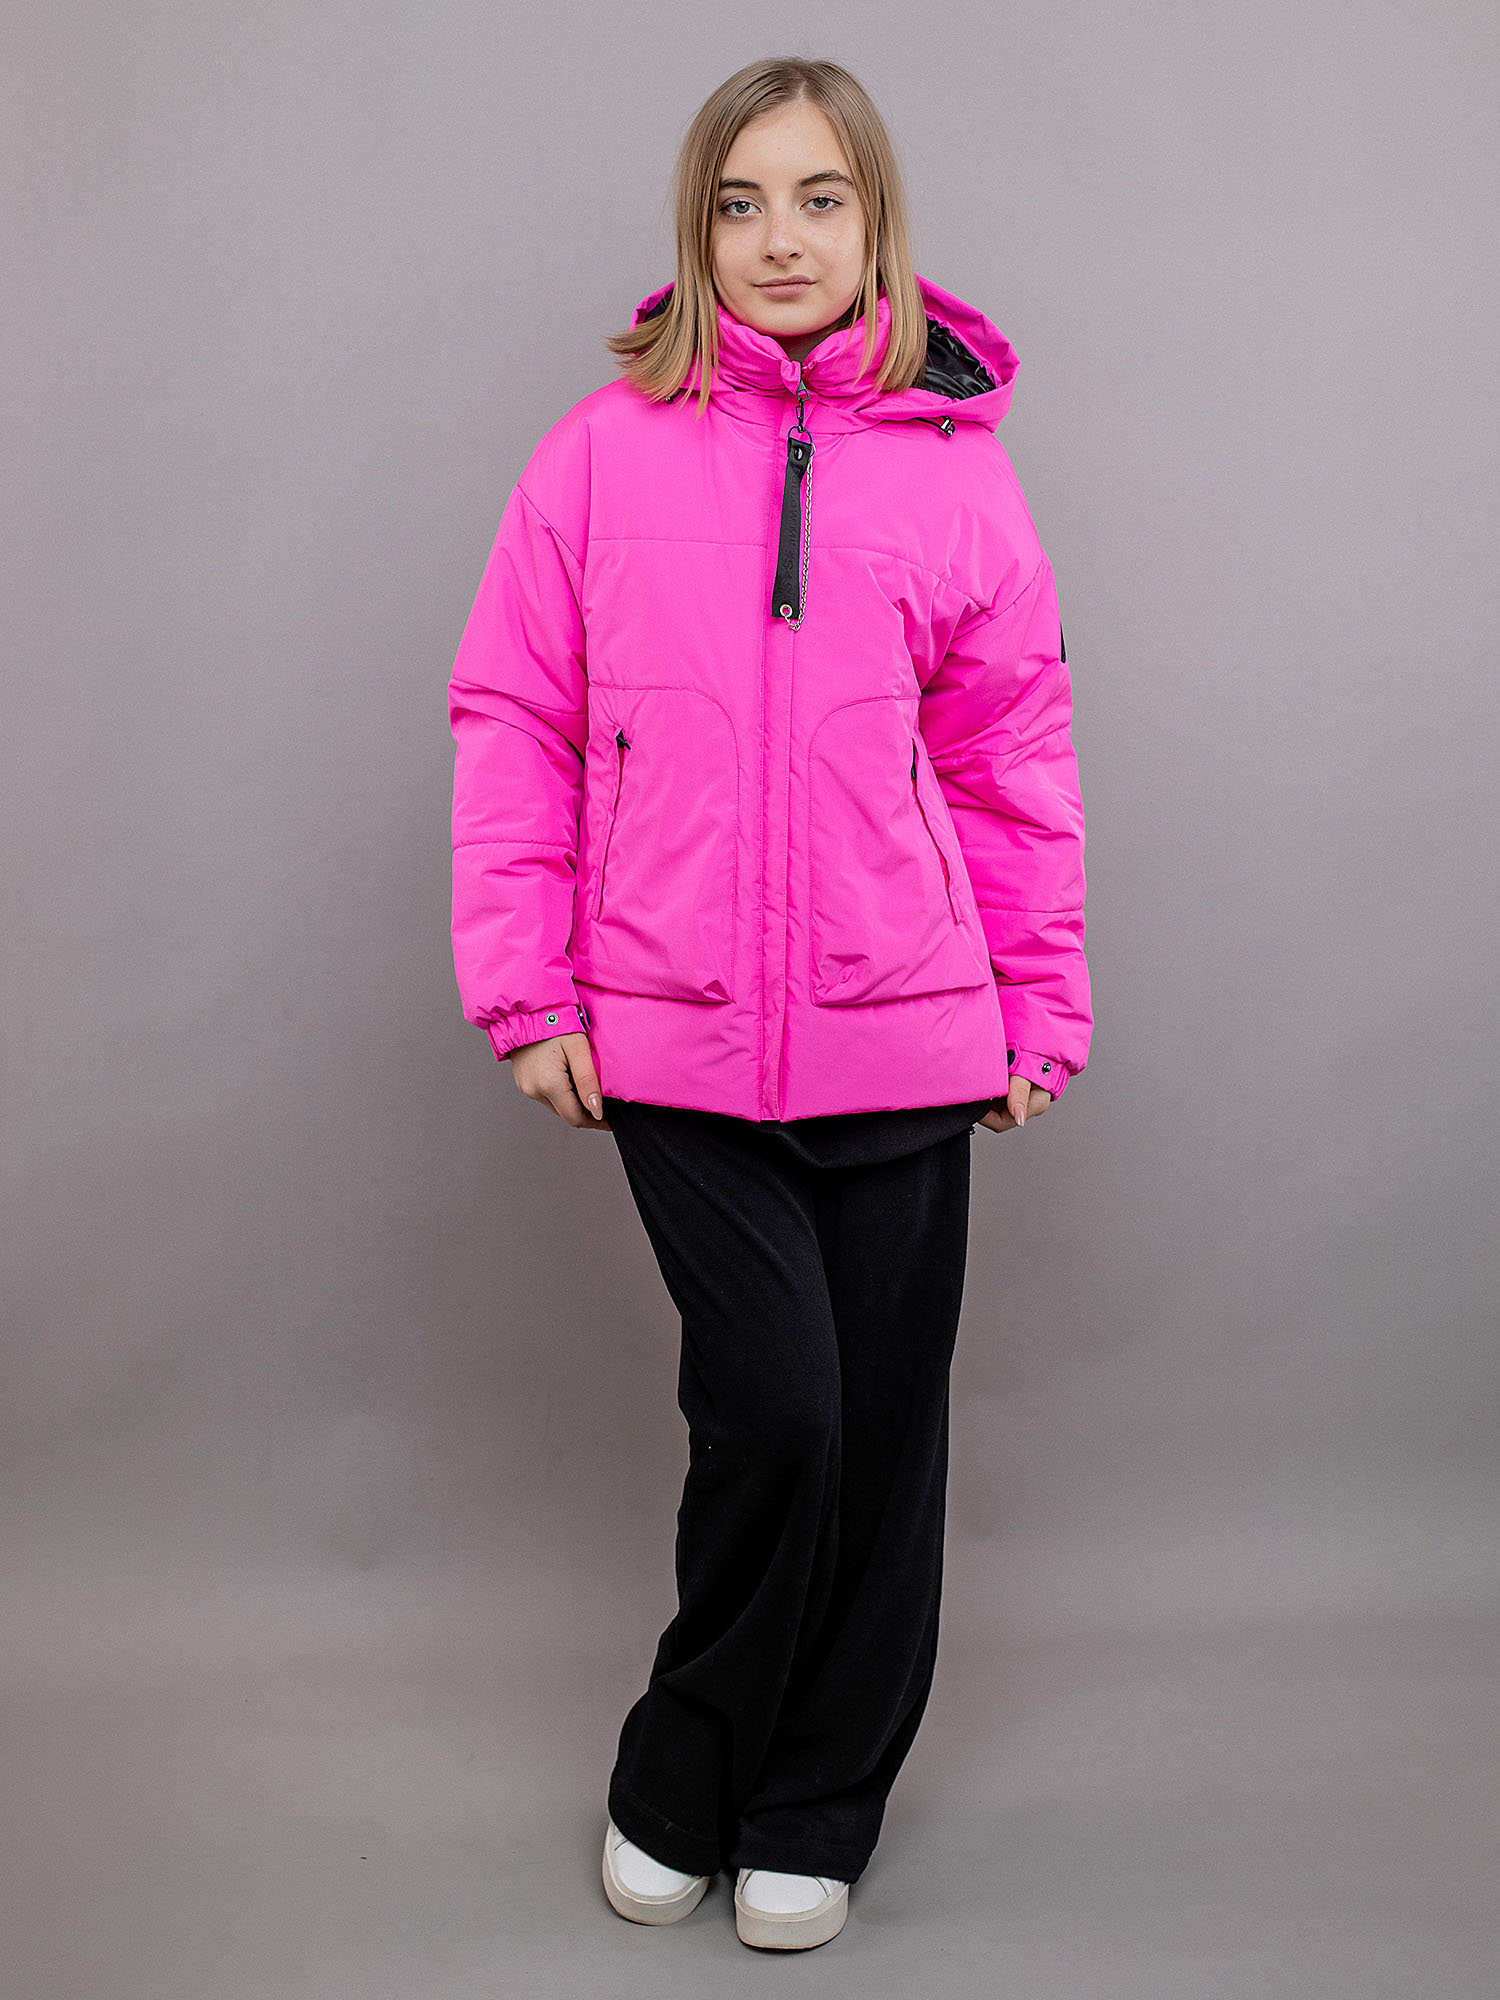 Куртка детская Batik Эффи, ярко-розовый, 152 стул шезлонг для кормления nuovita tutela rosa trapuntata розовый со стежкой